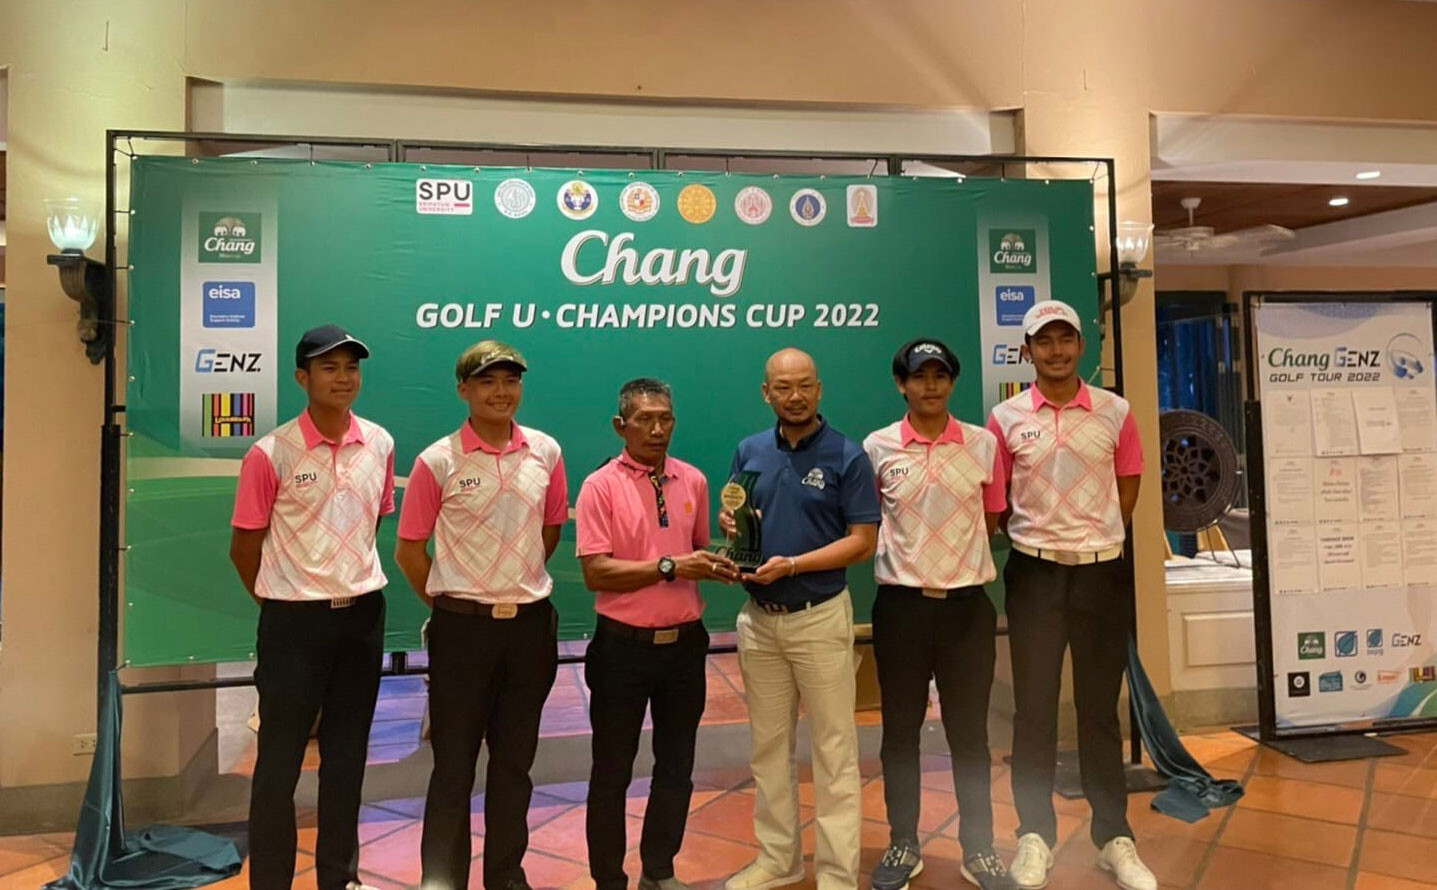 ม.ศรีปทุม ซิวแชมป์แรก ประเดิมศึกสวิงอุดมศึกษา "Chang Golf U 2022" เลควิว